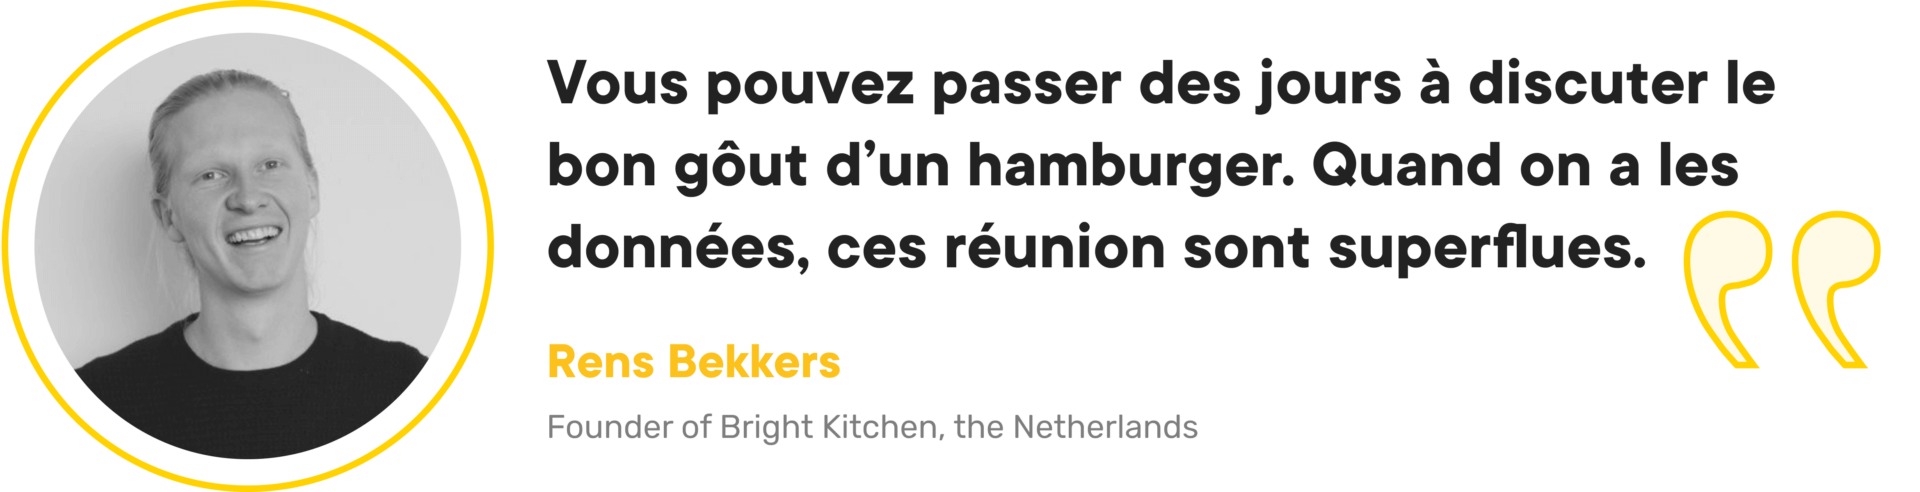 Rens Bekkers Bright Kitchen dark kitchen succès